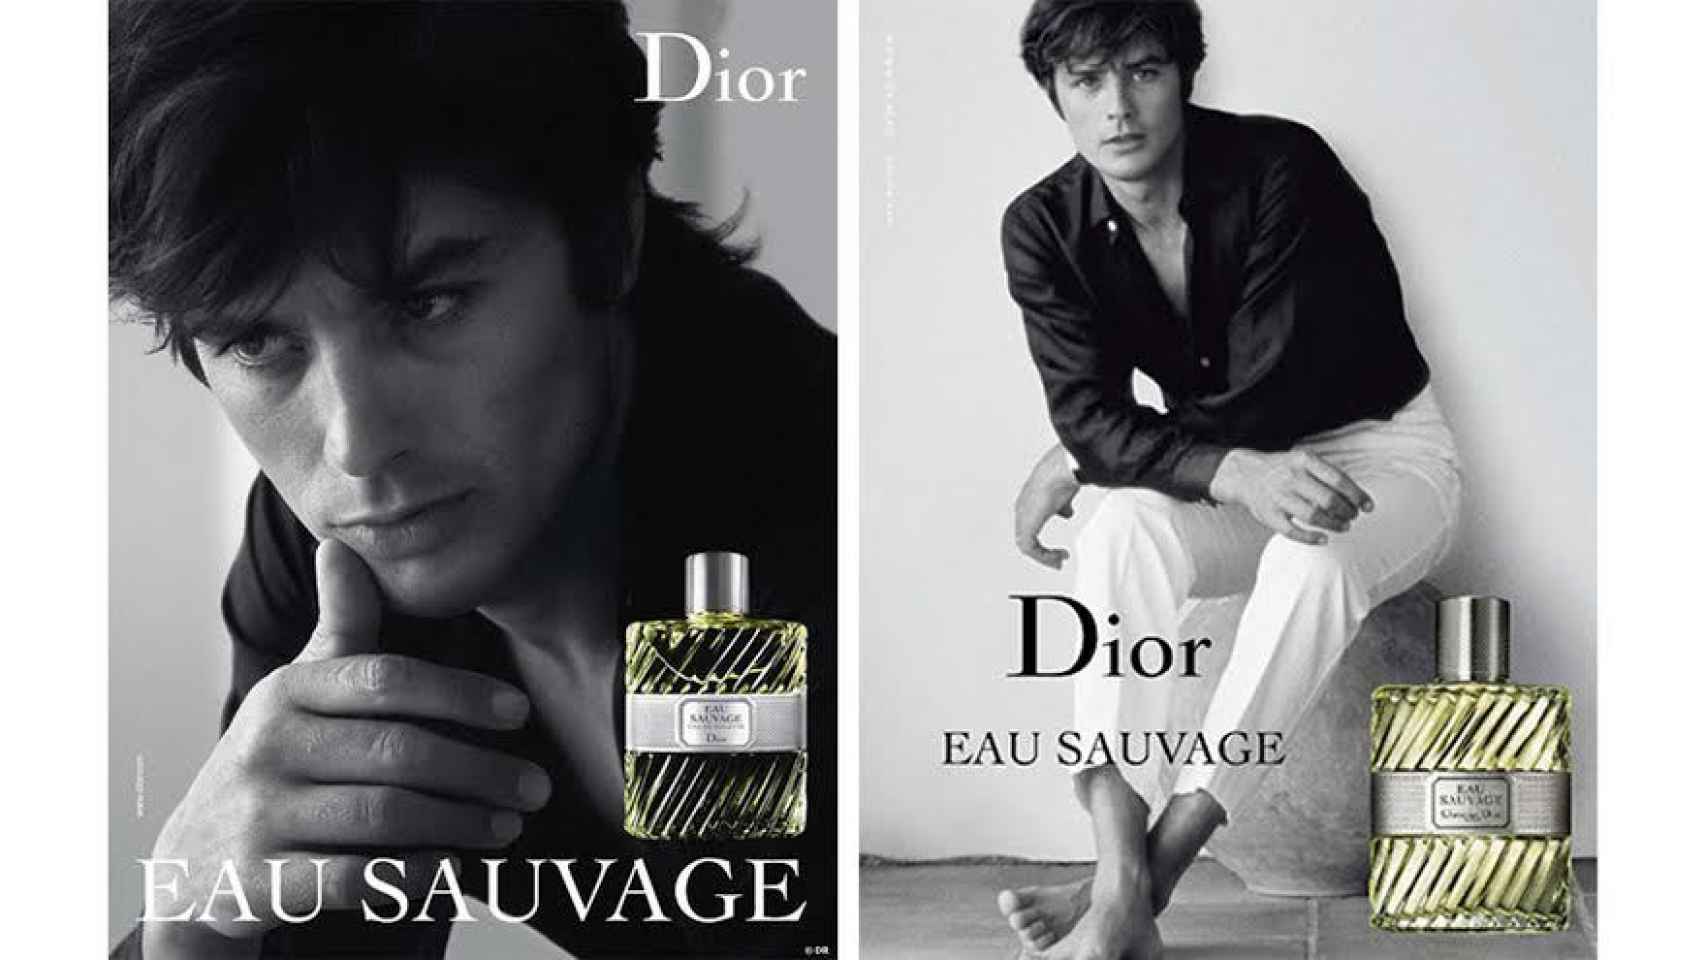 El hijo de Alain Delon ha sustituido a su padre como imagen del perfume.